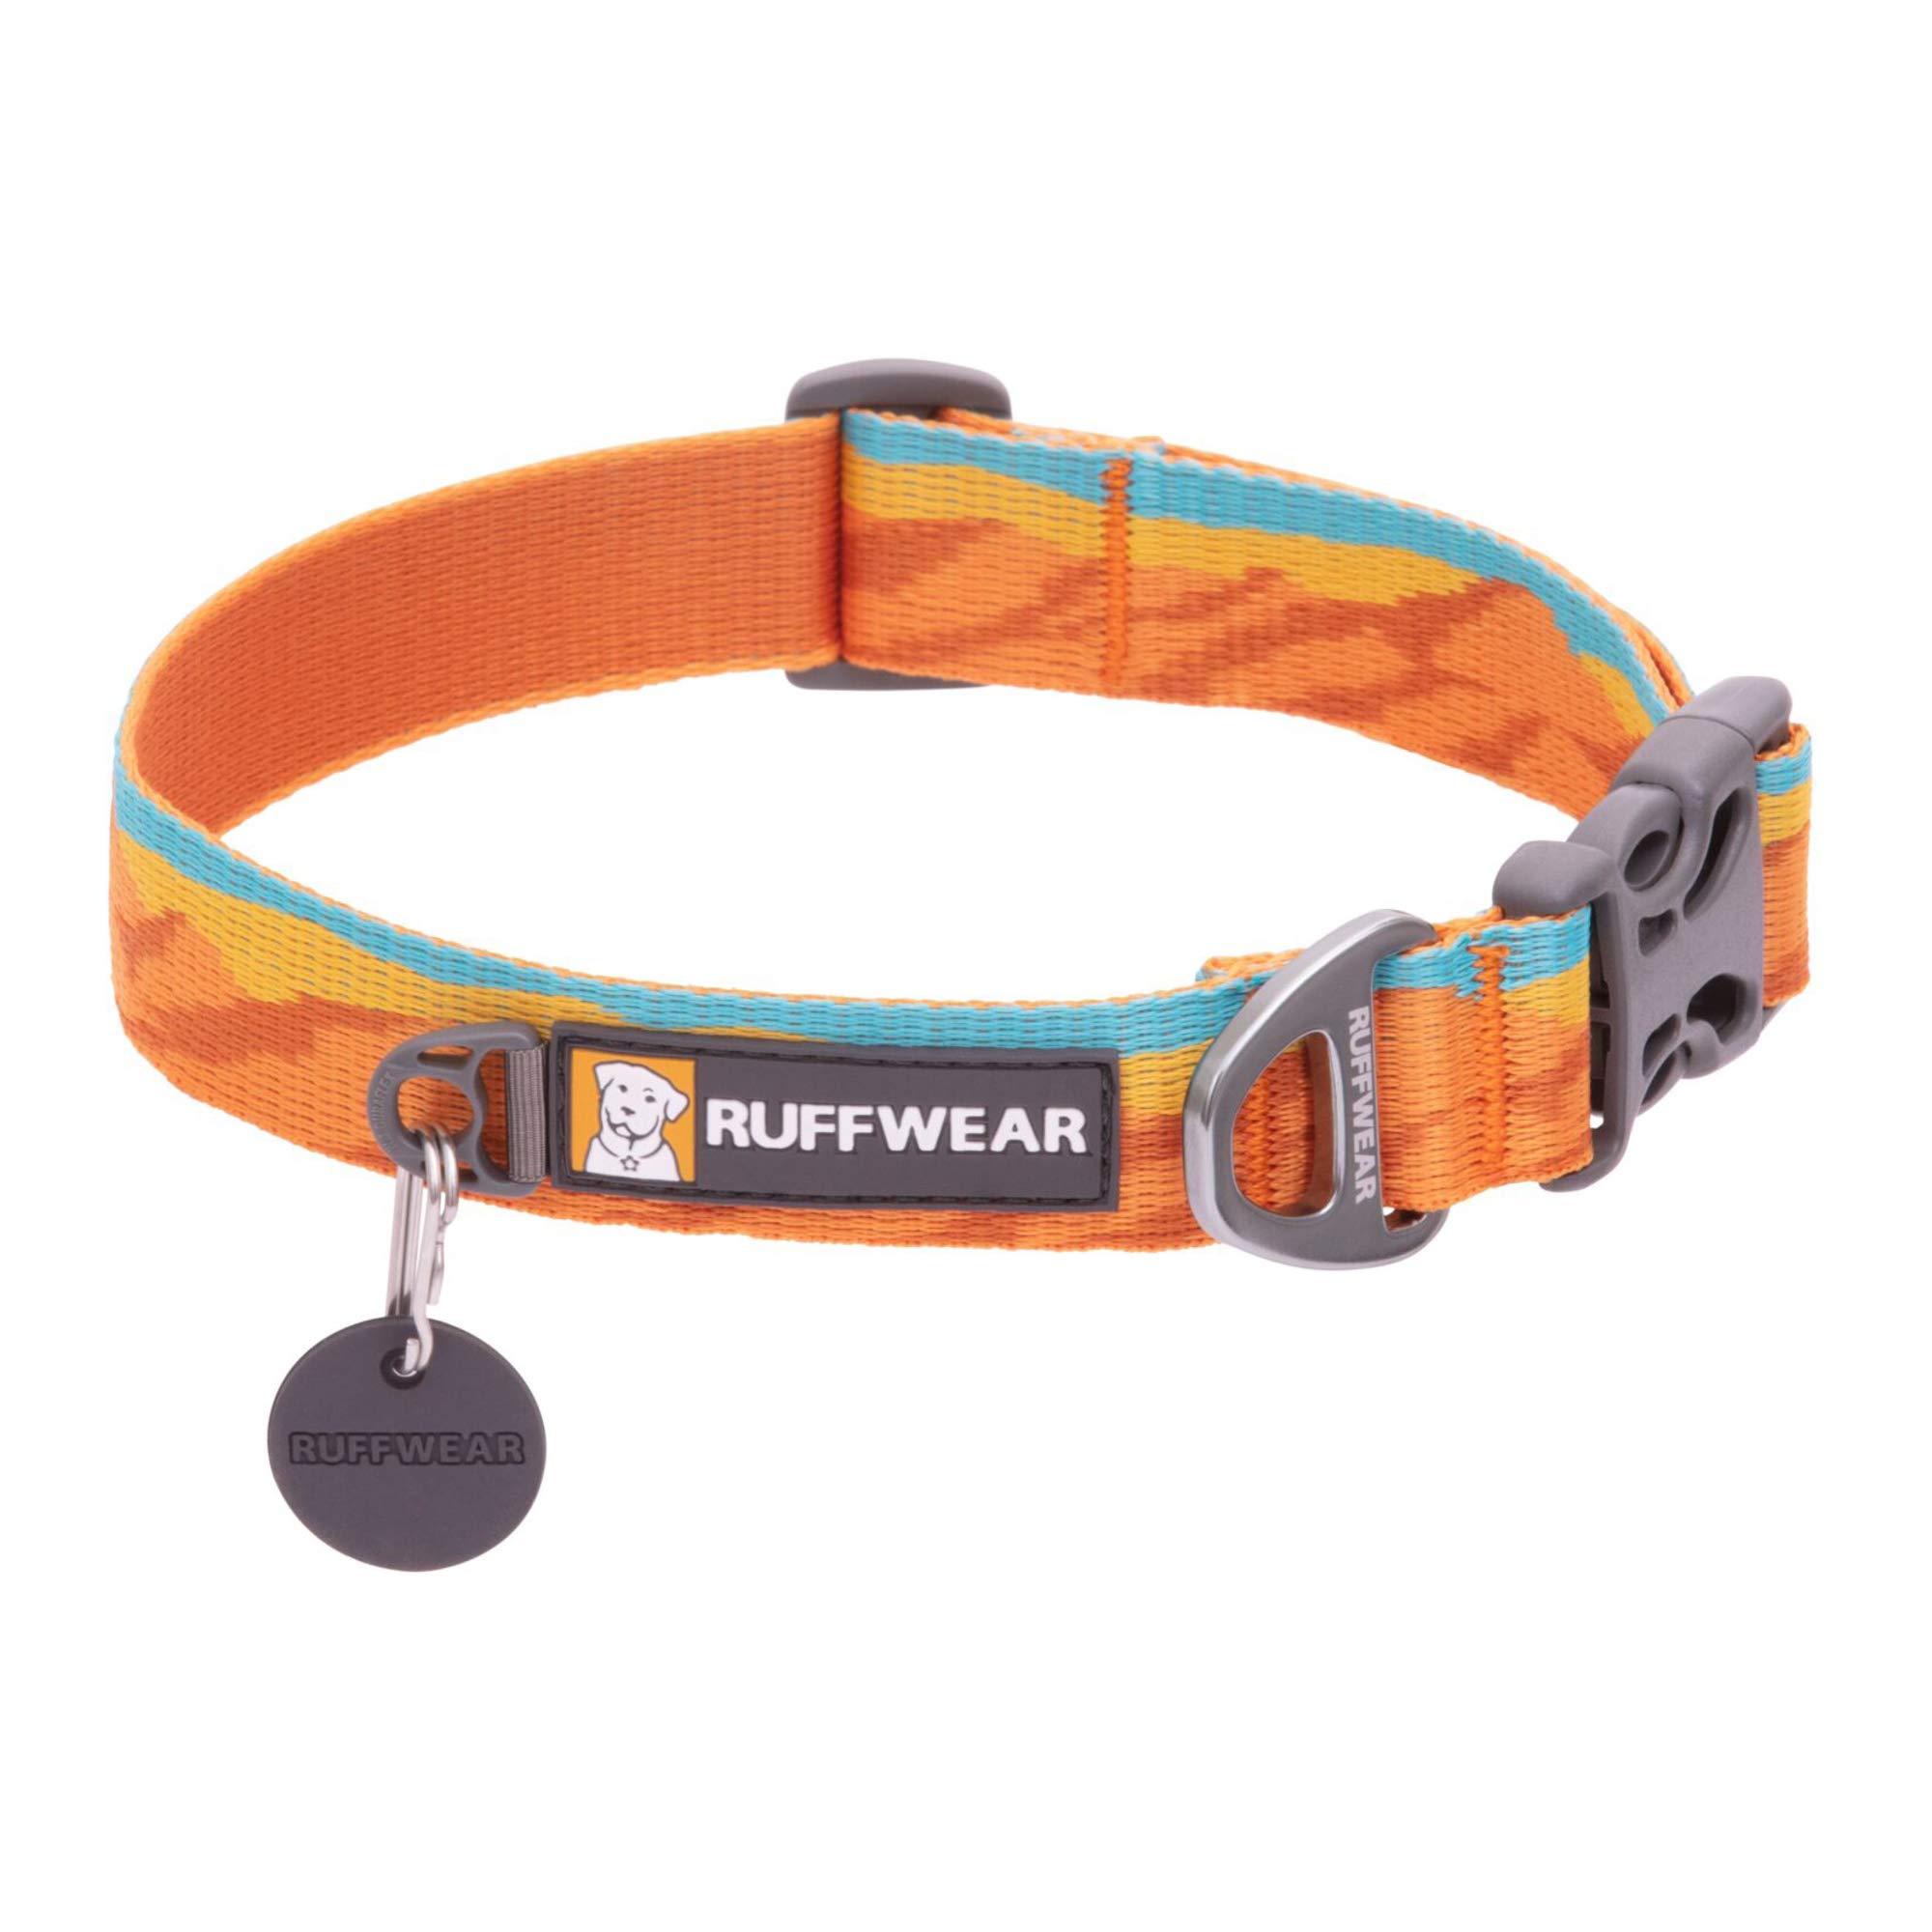 RUFFWEAR Flat Out Collar, Klassisches Hundehalsband für Kleine Hunderassen, Einstellbare Passform, Größe S (28-36 cm), Fall Mountains